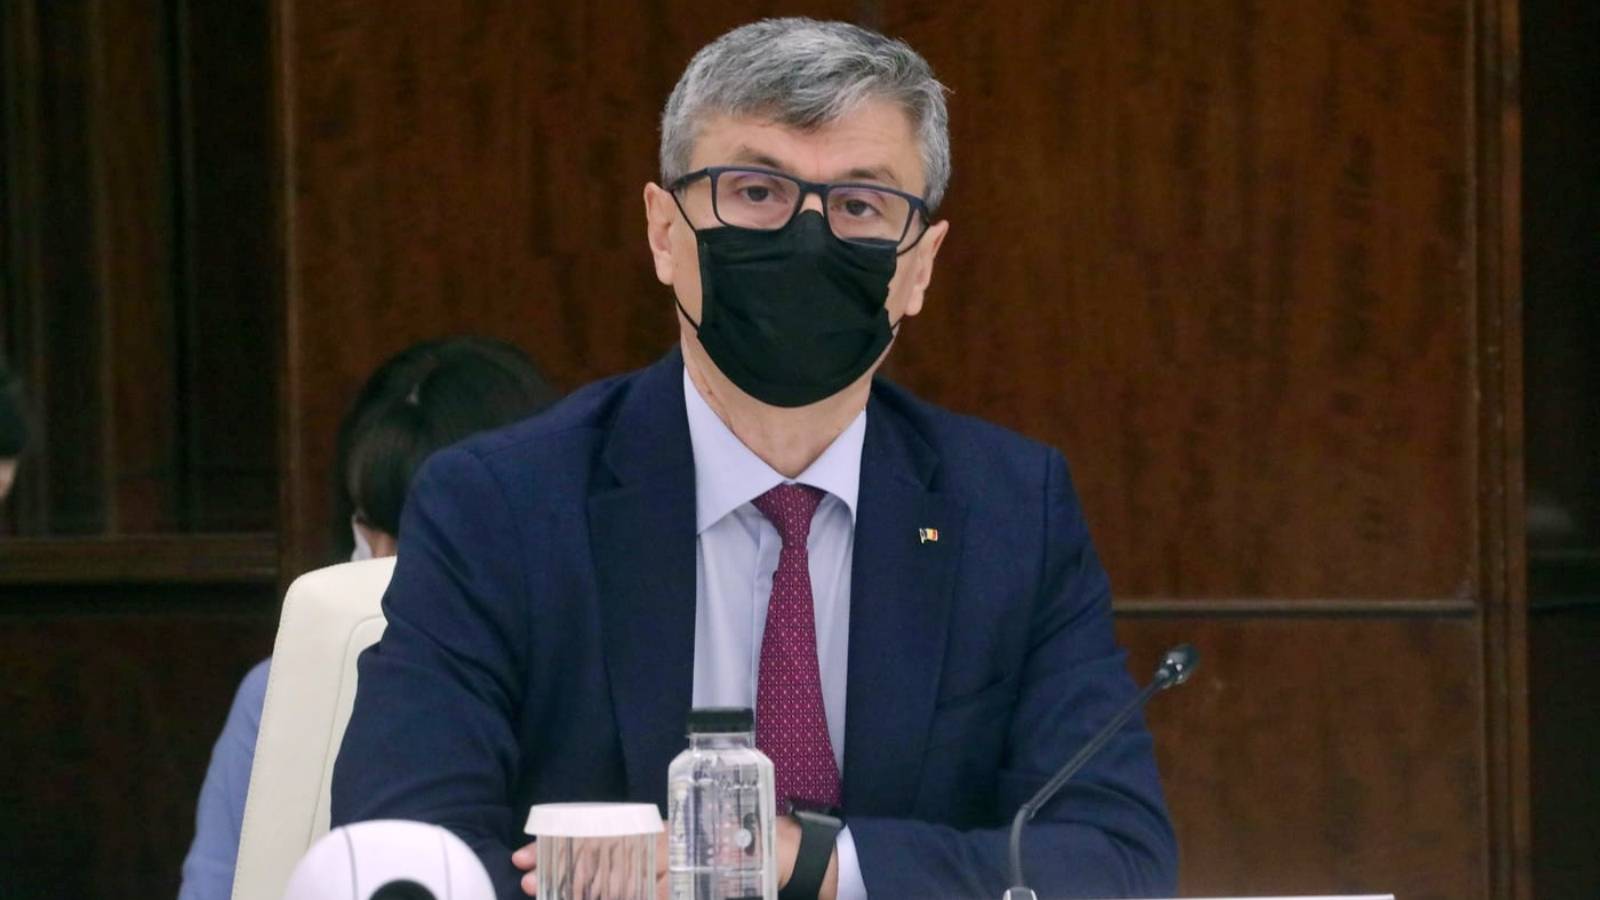 Le decisioni dell'ultimo minuto del Ministro dell'Energia hanno un impatto su tutta la Romania